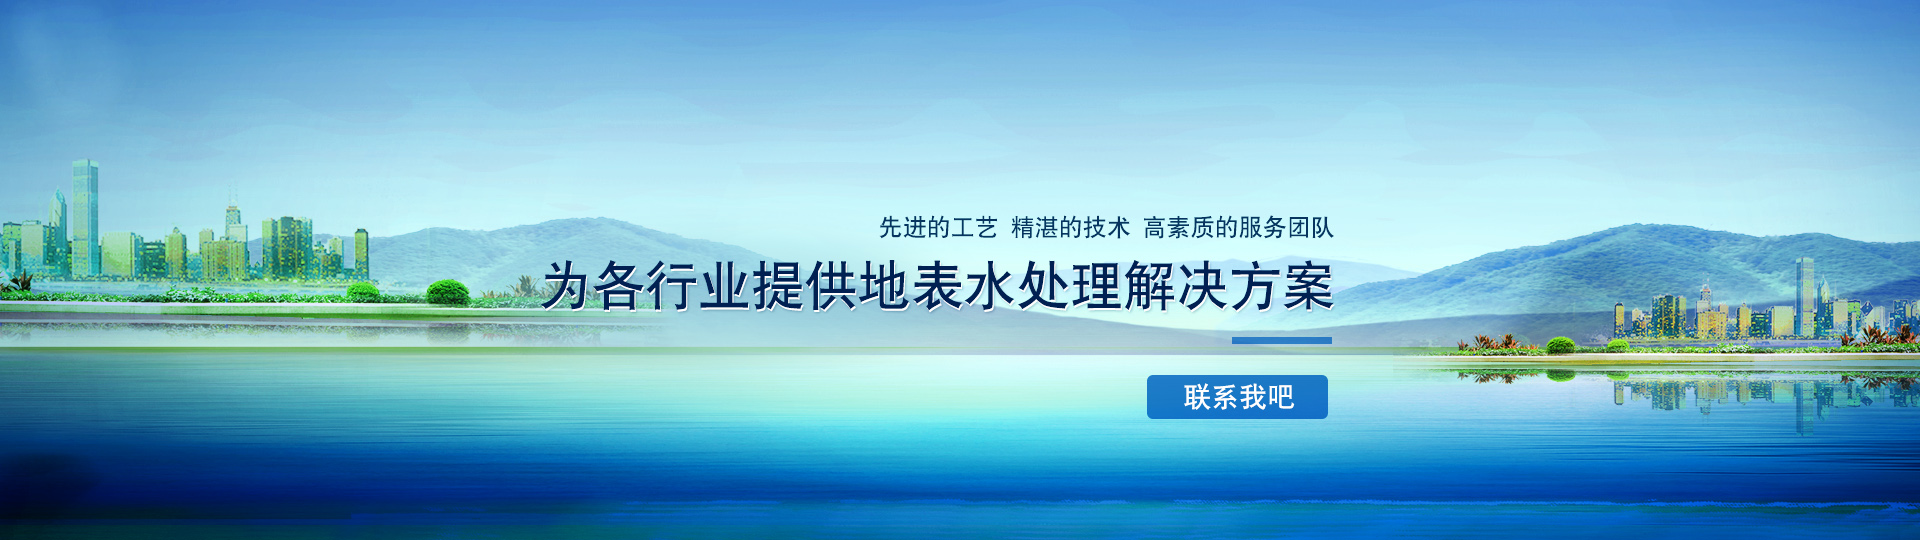 郑州蓝洋水处理设备公司